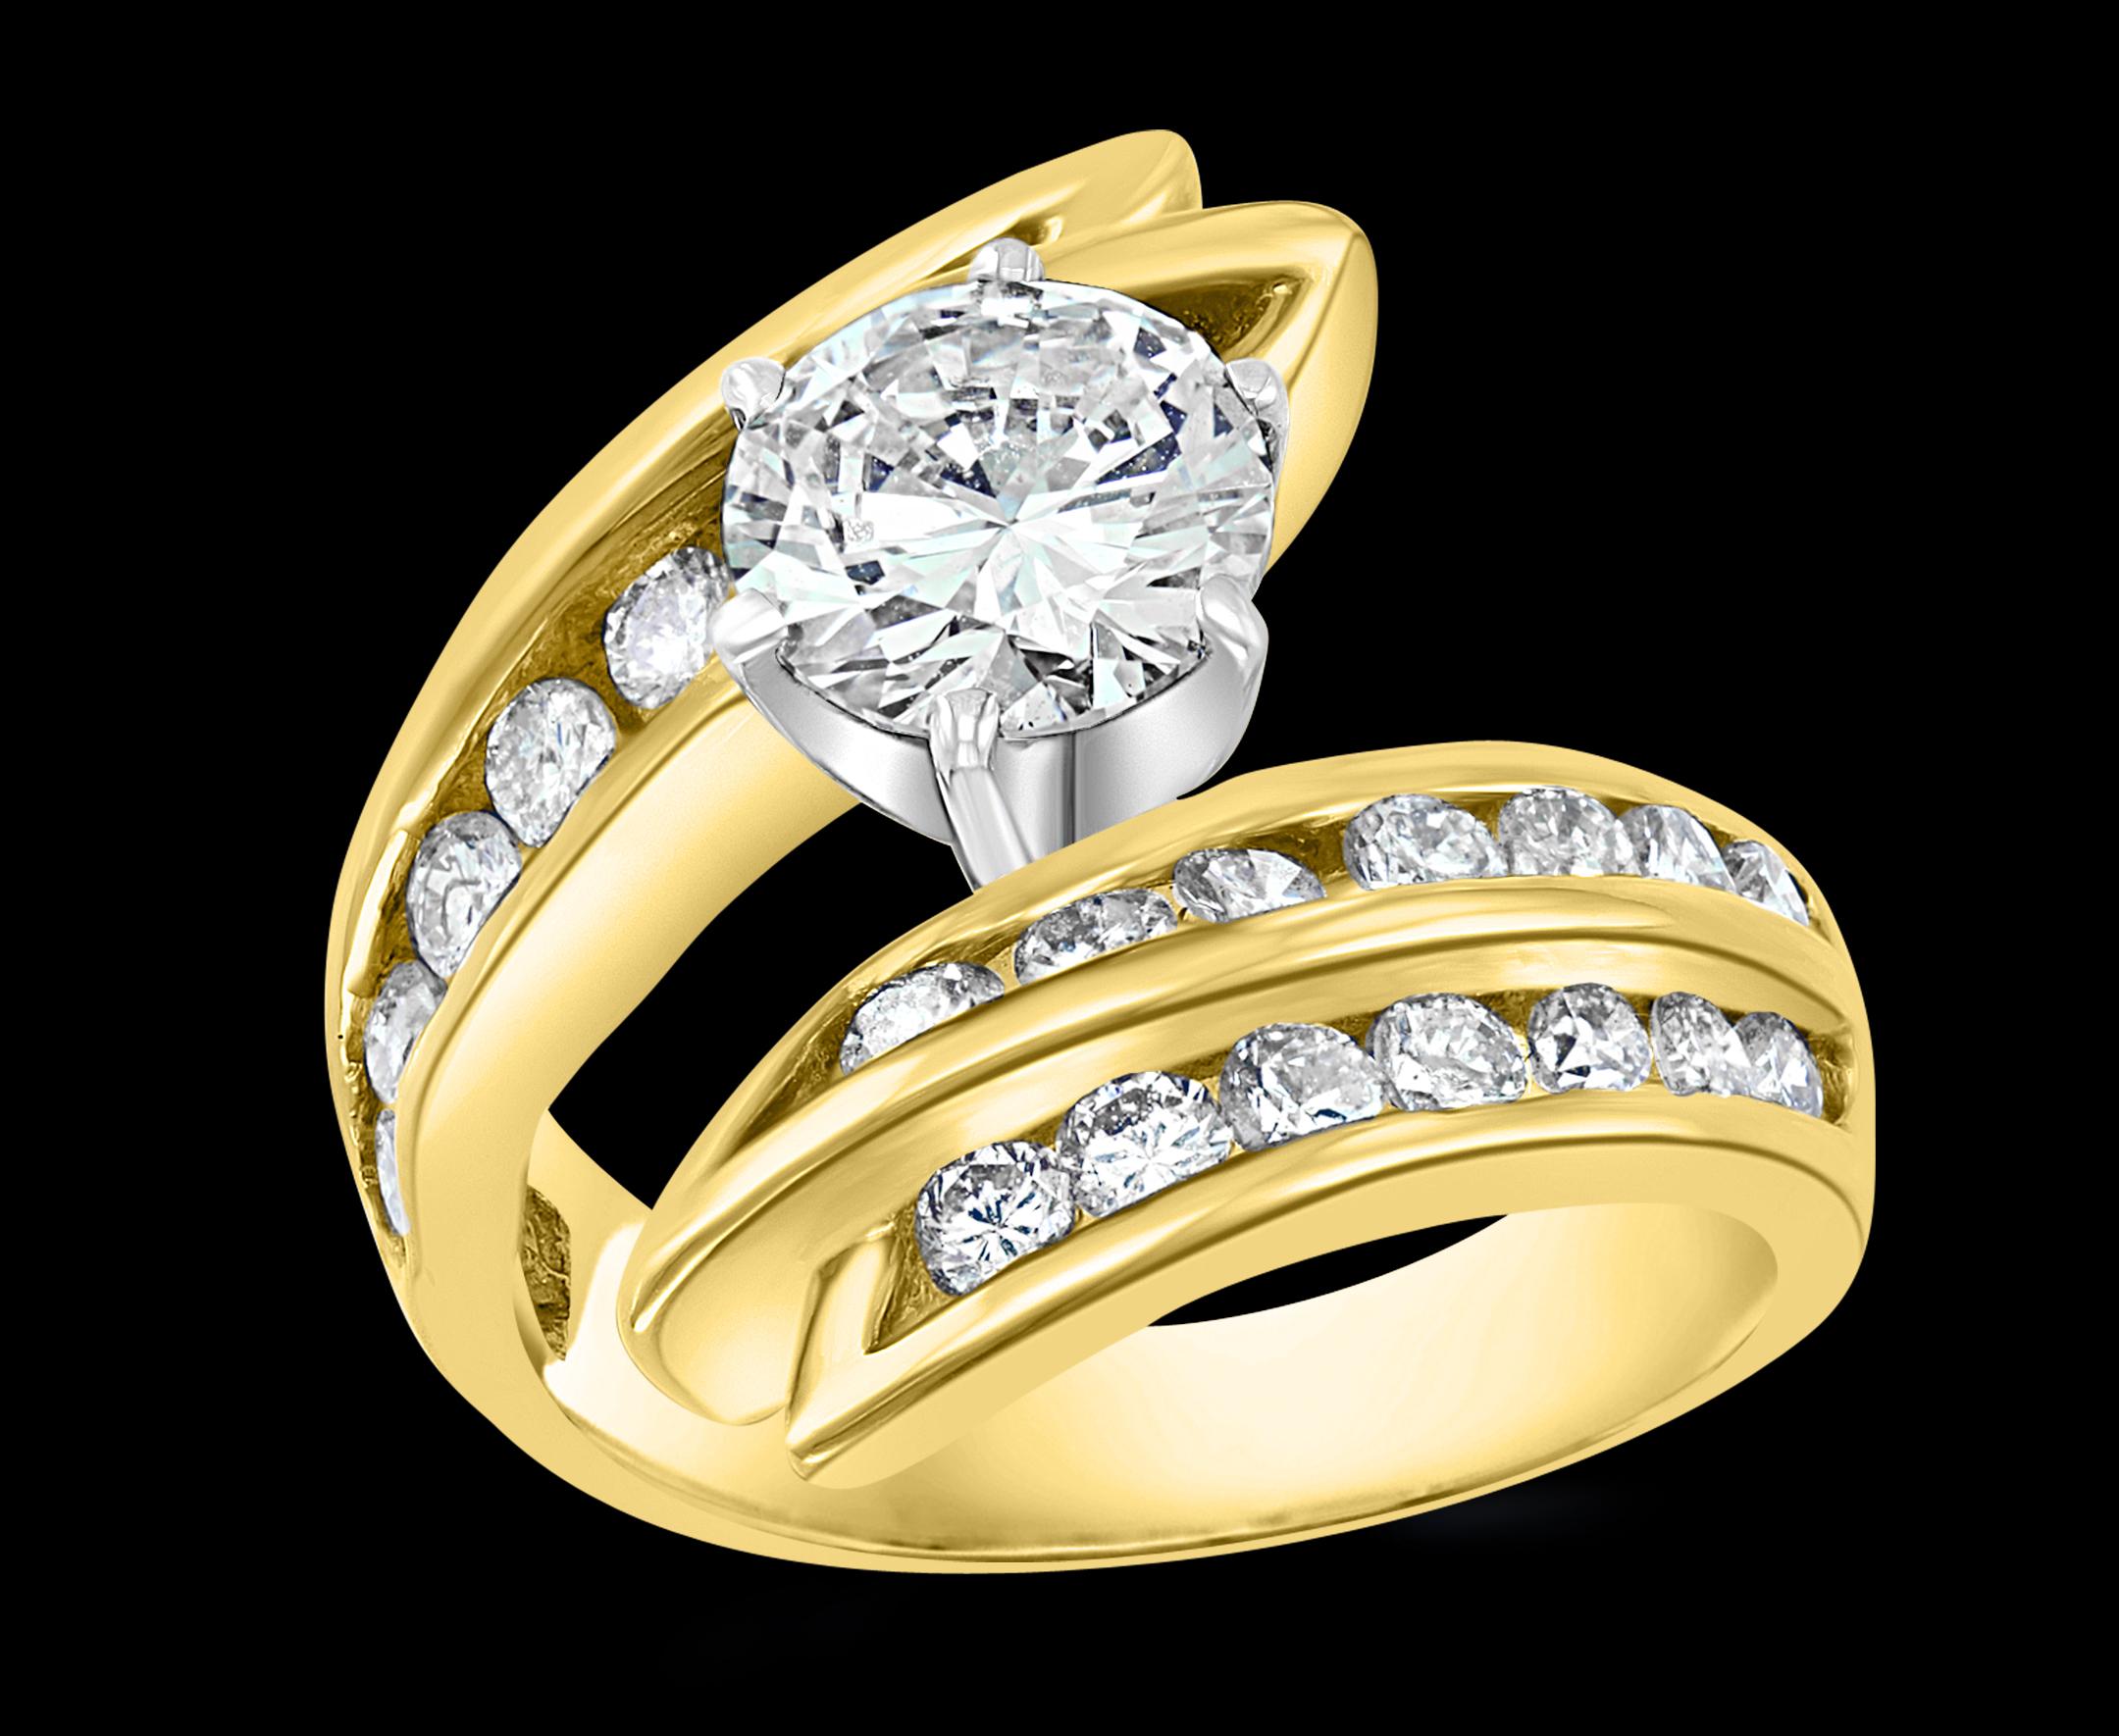 1.5 carat solitaire diamond ring